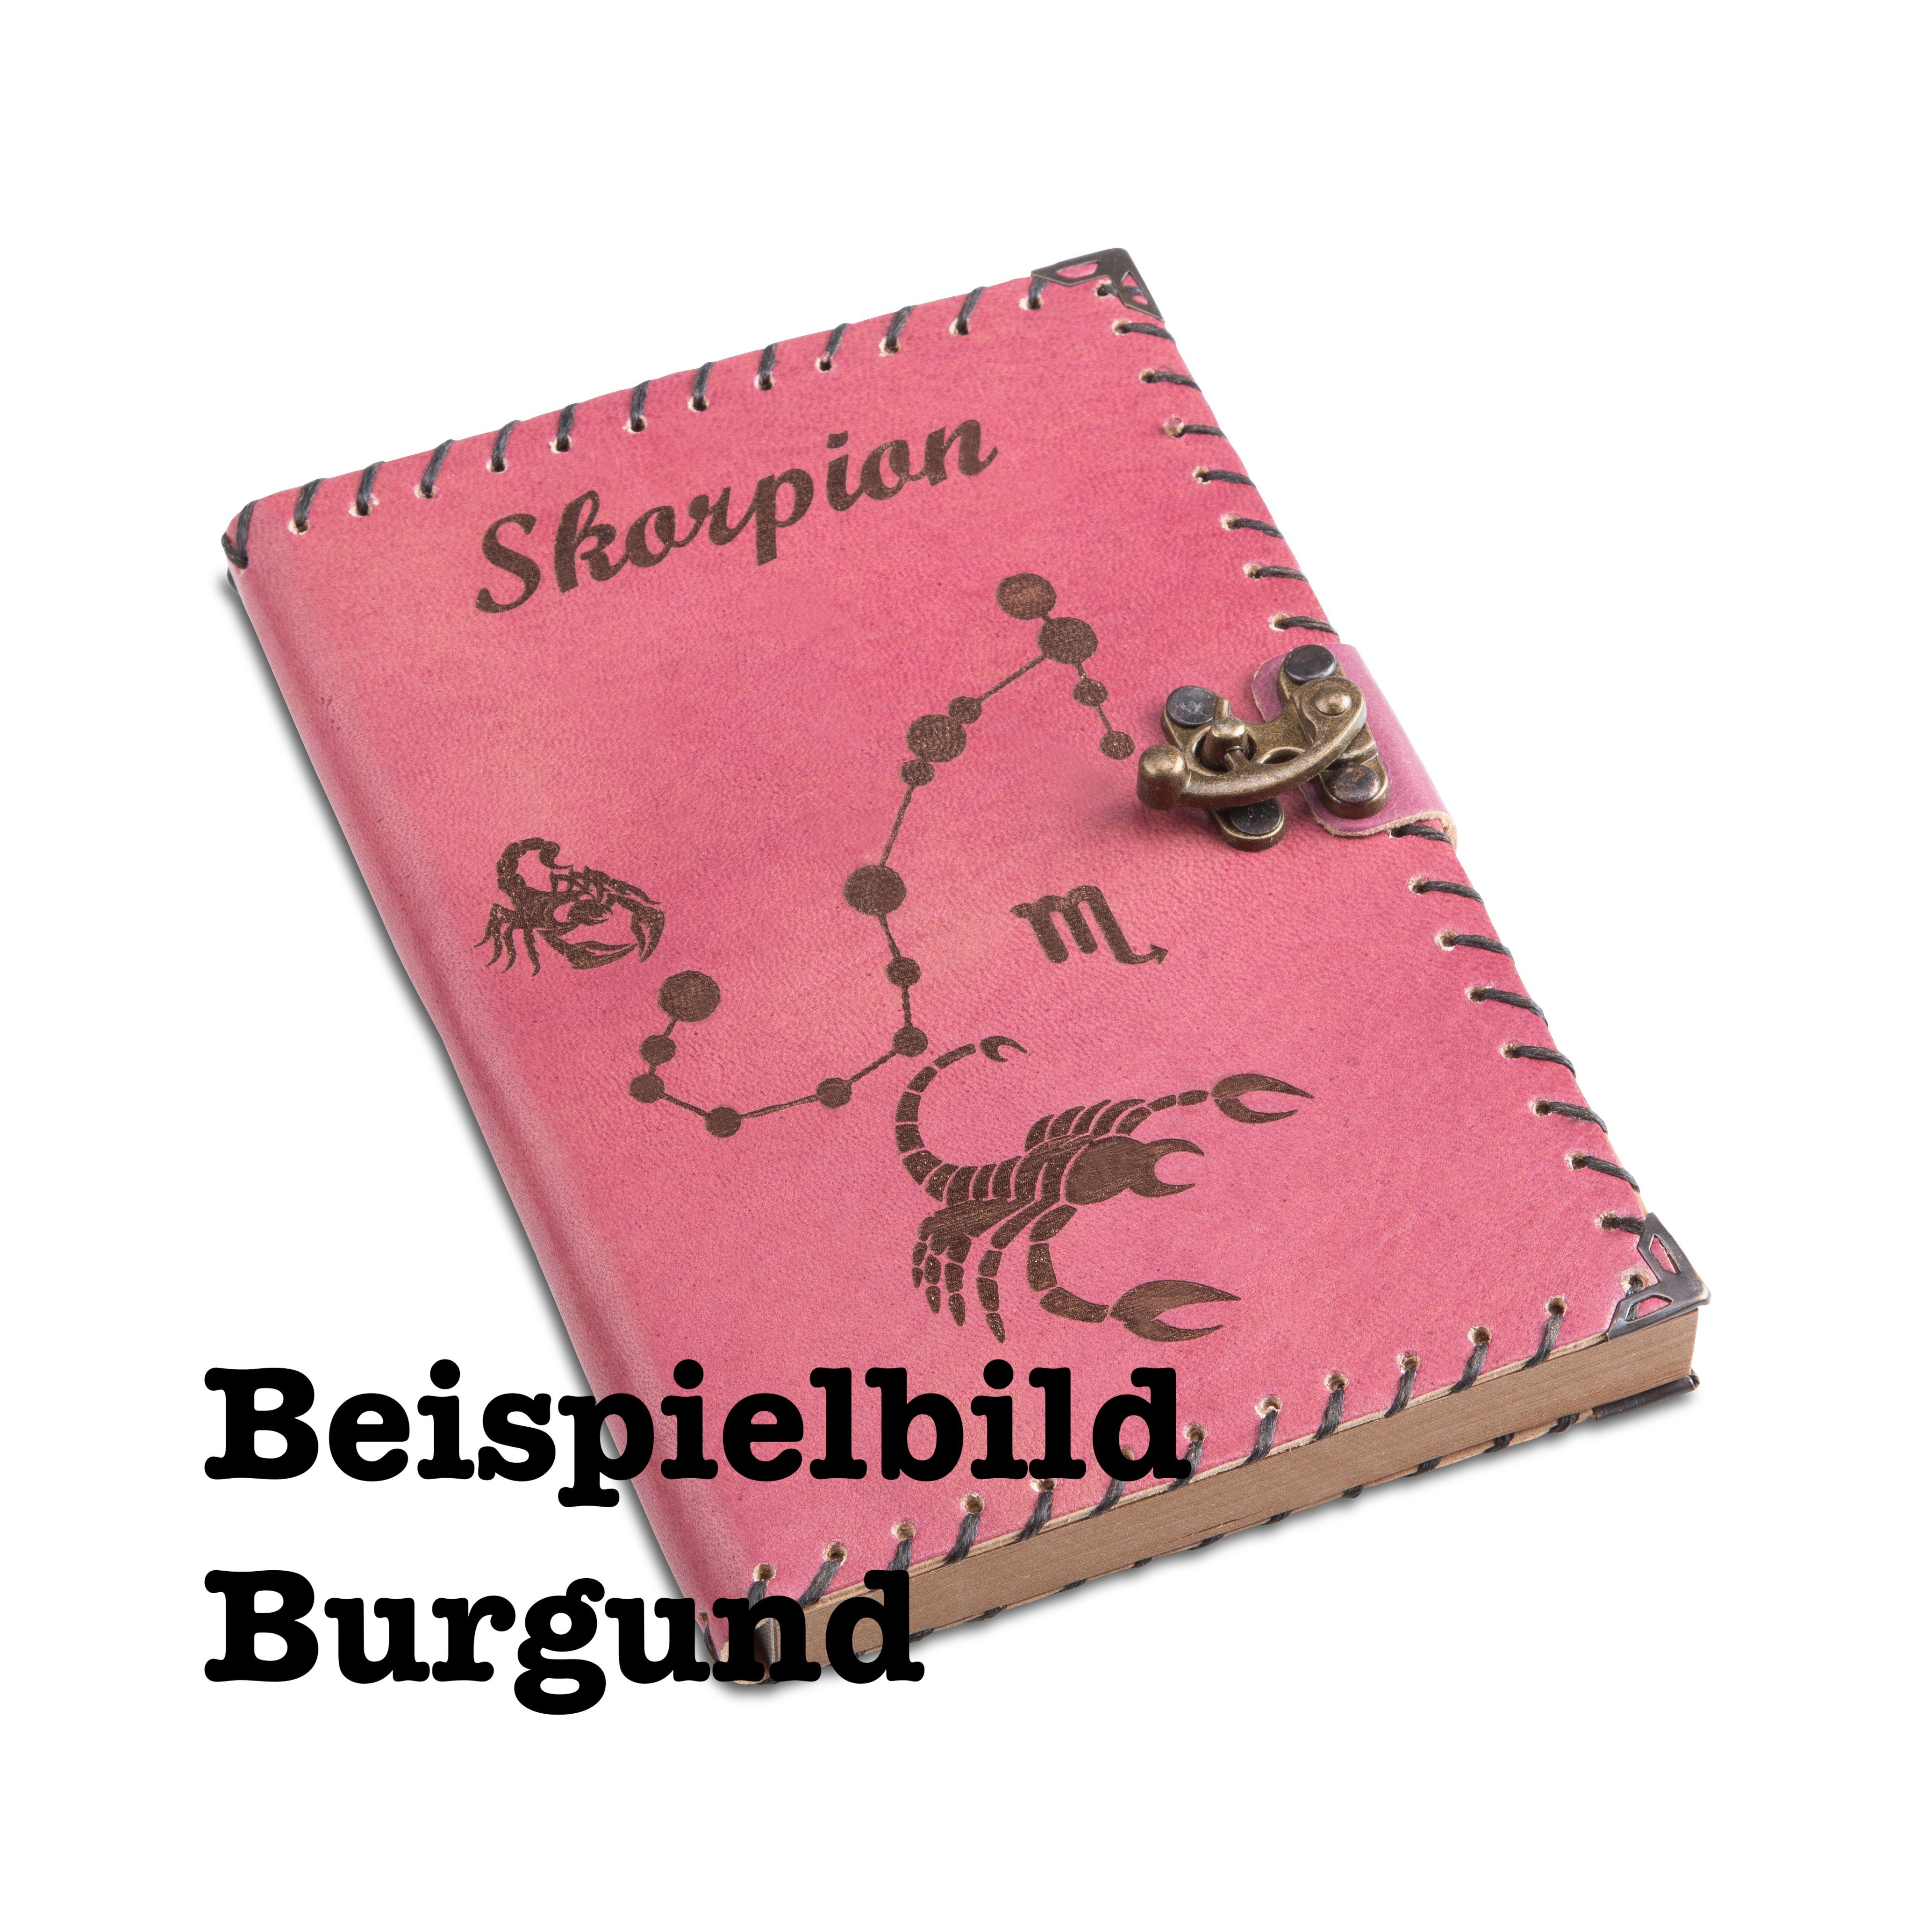 Journal, Burgund echtem Tagebuch Notizbuch Handgefertigt Tagebuch Leder Design) Sternzeichen (12 QUAMOD aus